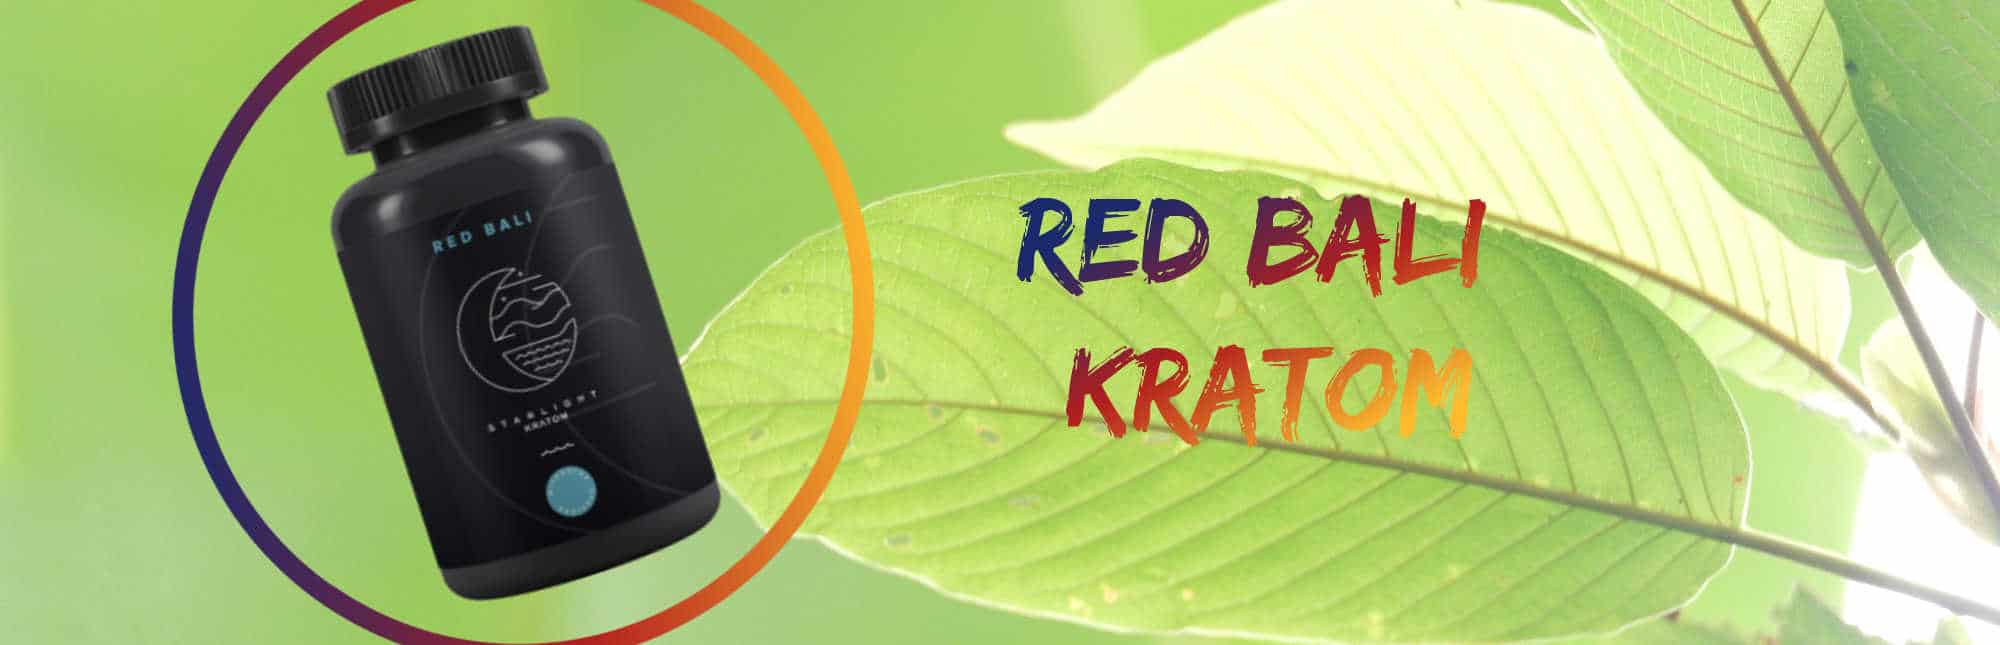 image of red bali kratom